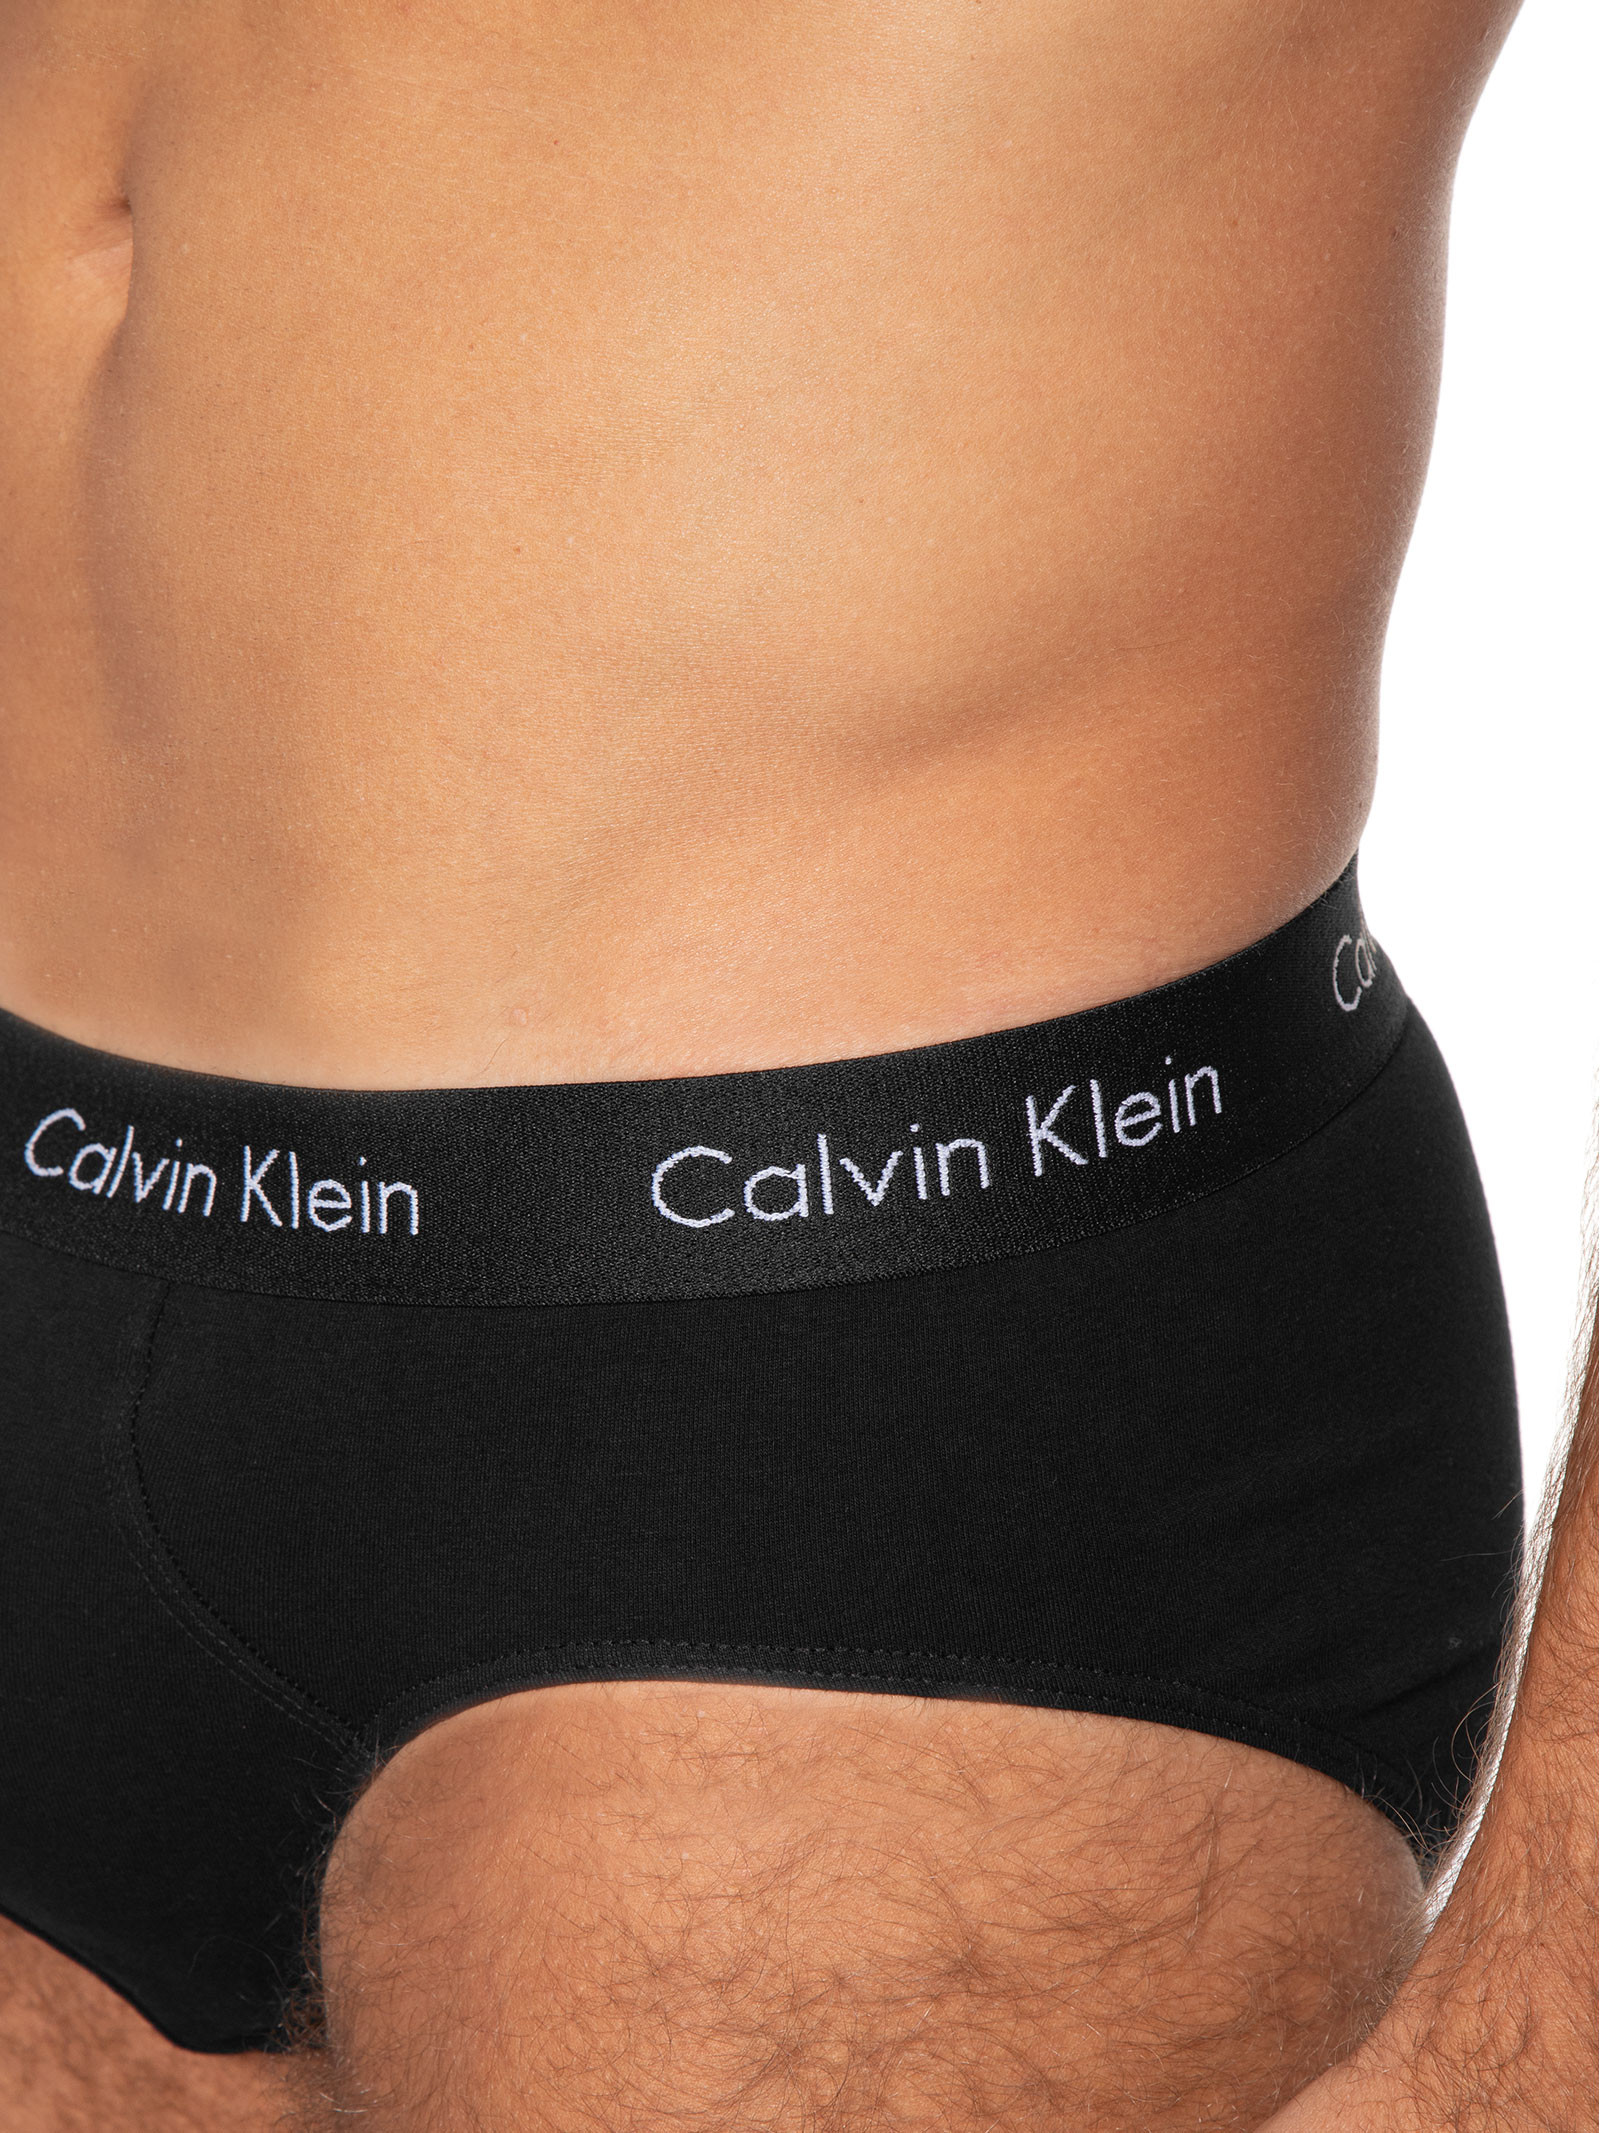 Kit 3 Cuecas Brief - Calvin Klein Underwear - Preto - Oqvestir